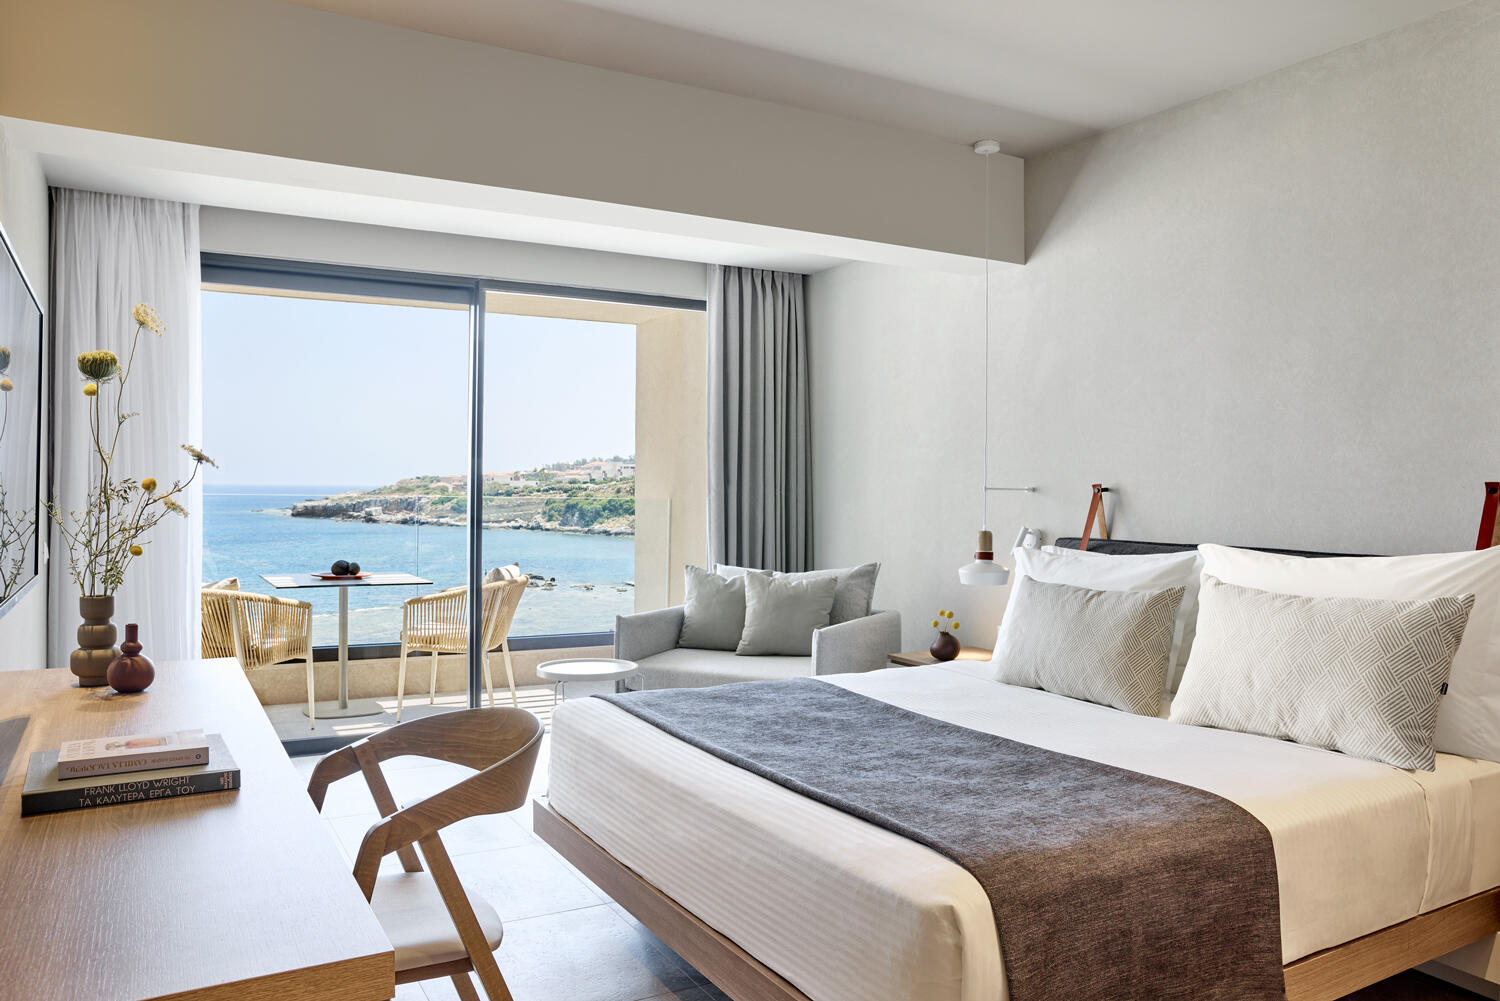 Elissa Lifestyle Resort: Schlafzimmer mit großem Doppelbett und einer großen Terrassentür, die Blick auf das Meer gibt